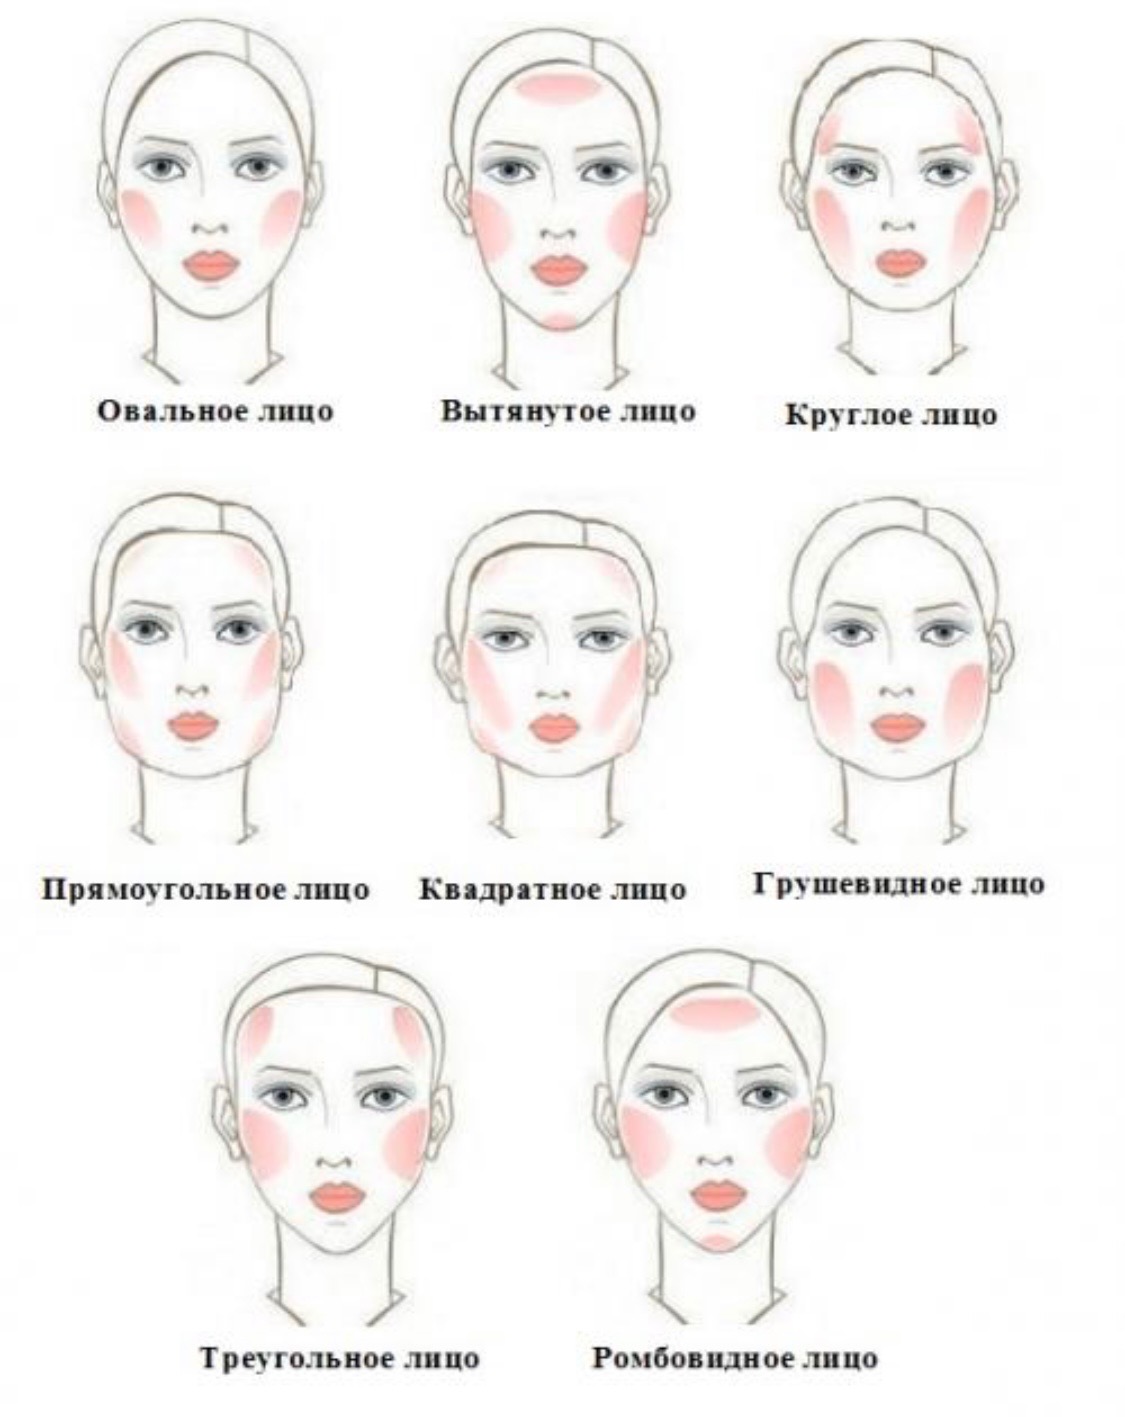 Коррекция лица с помощью макияжа схема